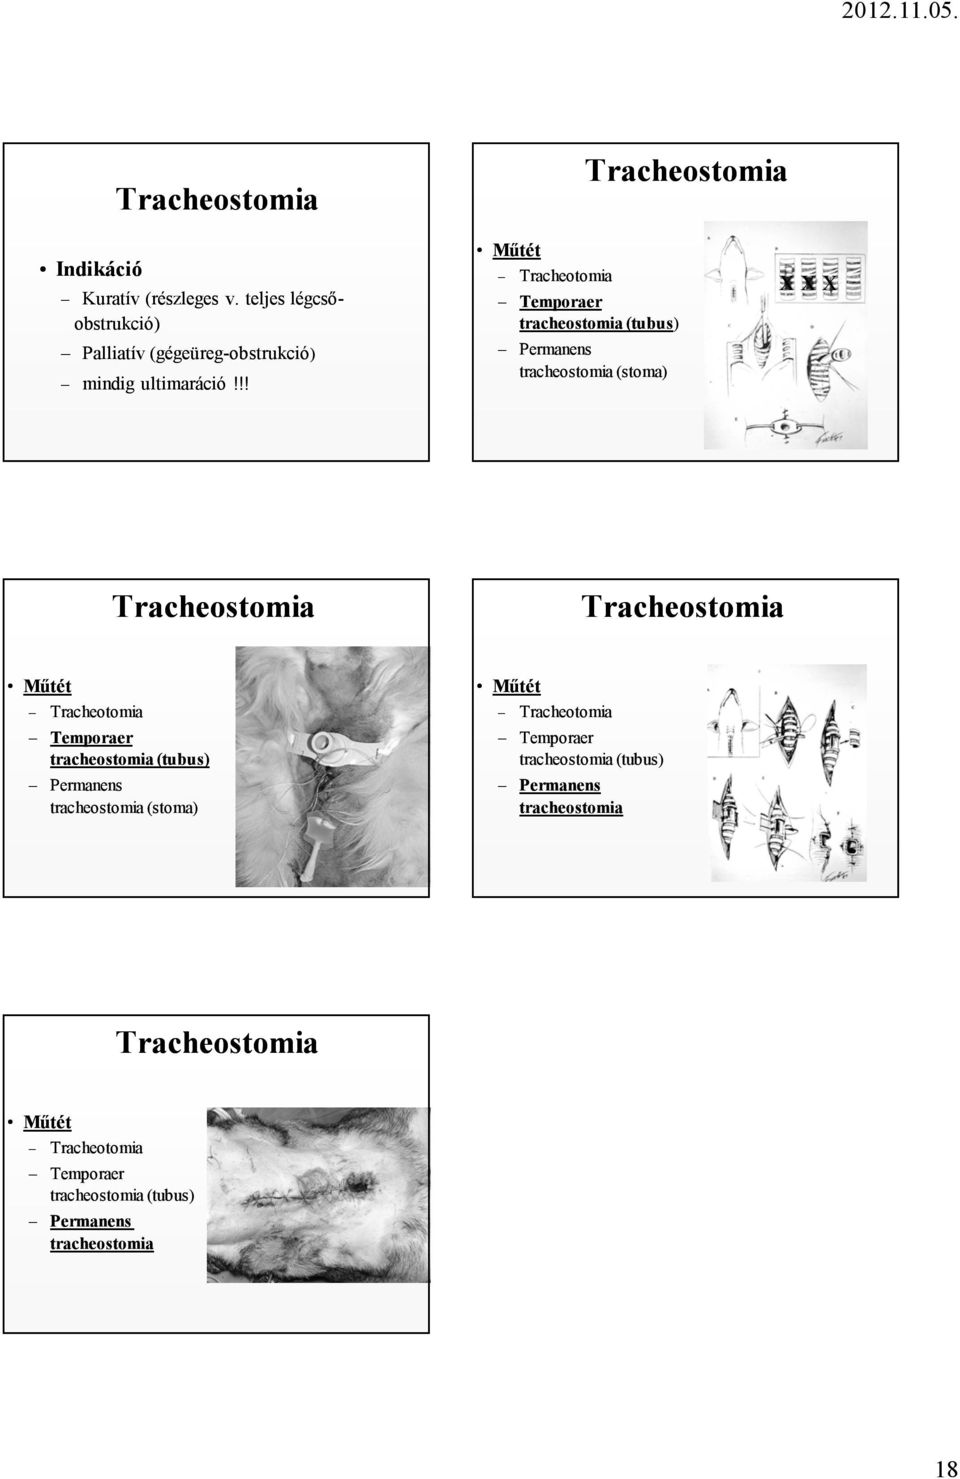 !! Tracheotomia Temporaer tracheostomia (tubus) Permanens tracheostomia (stoma) X X X Tracheostomia Tracheostomia